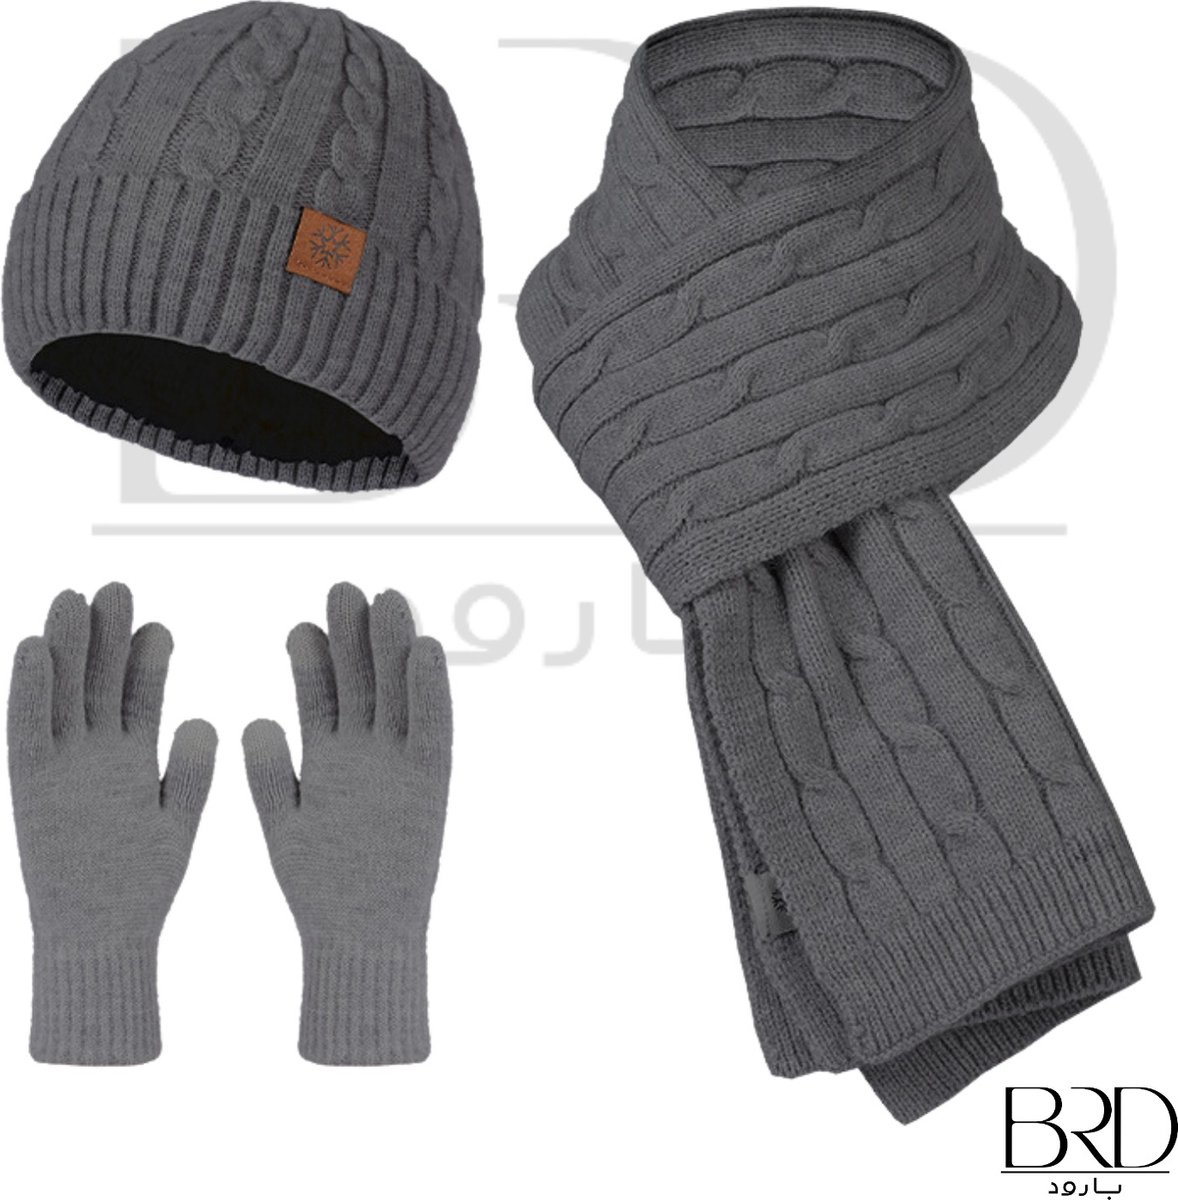 BRD Winter set voor volwassenen Grijs - gevoerde muts, sjaal en handschoenen - Set van 3 delig - gebreid unisex mannen vrouwen dames